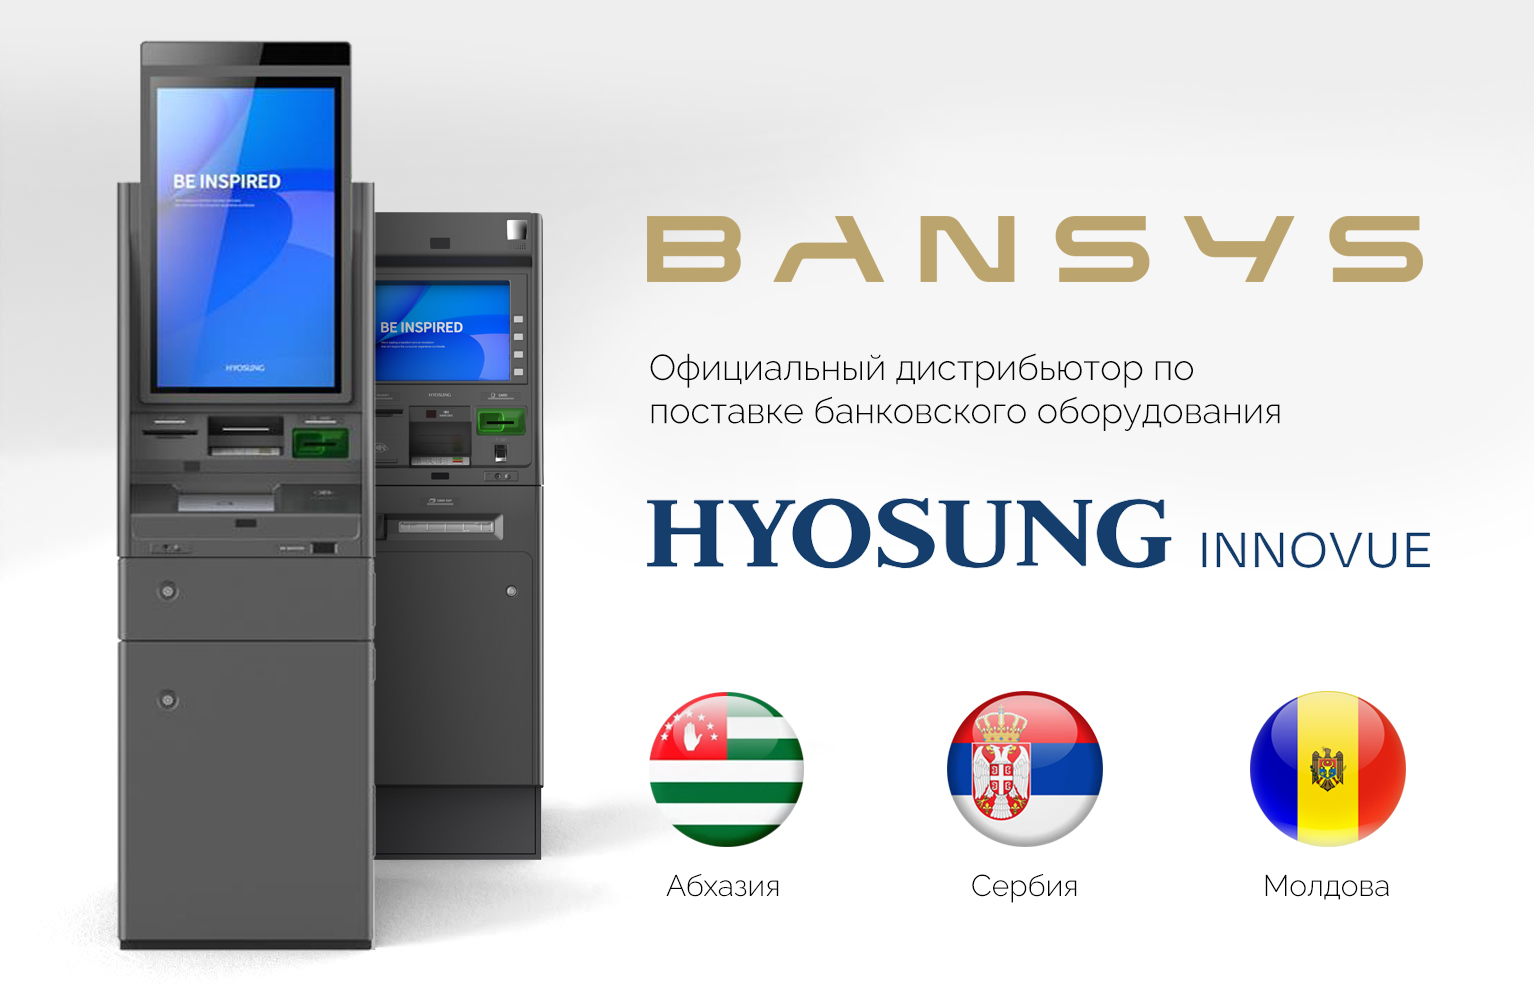 ООО «БЭНСИС» стал официальным поставщиком банковского оборудования Hyosung TNS